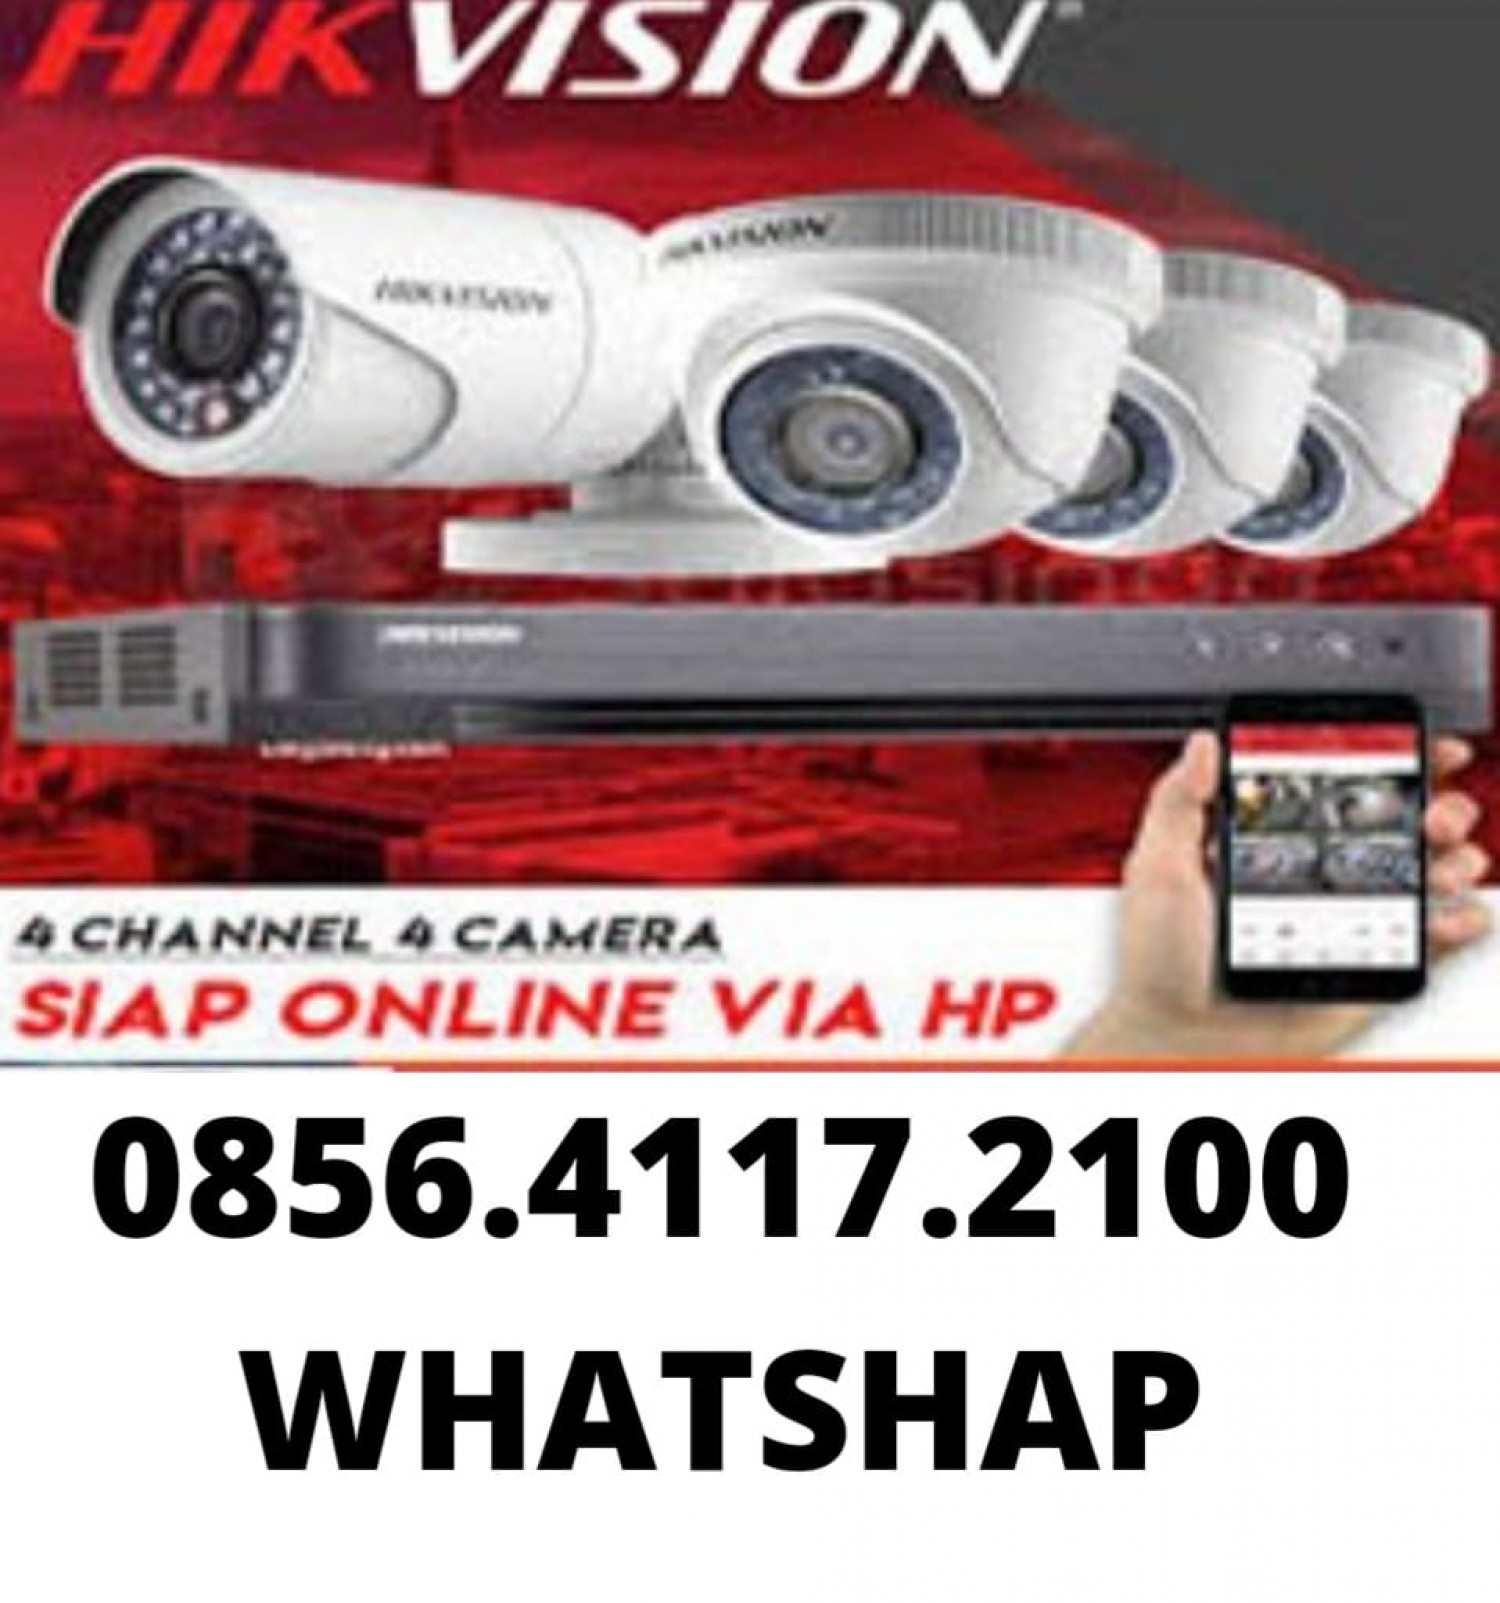 JASA PASANG CCTV BANDUNG#1 Cepat 085641172100